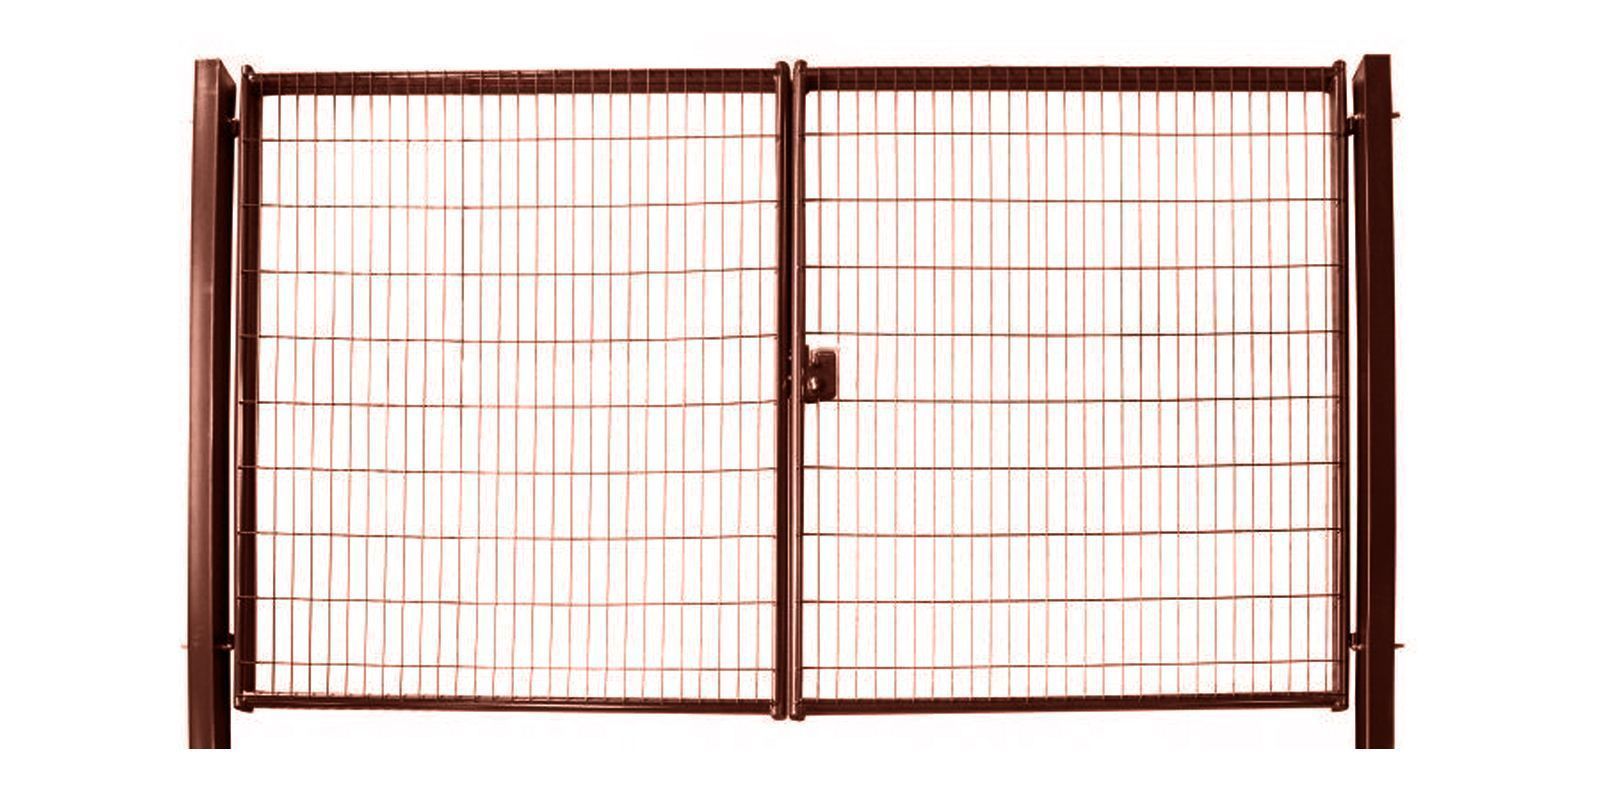 Ворота для панельного ограждения Medium, 1,53 м, ширина 3,5 м, изображение, фото | Сталь ТД